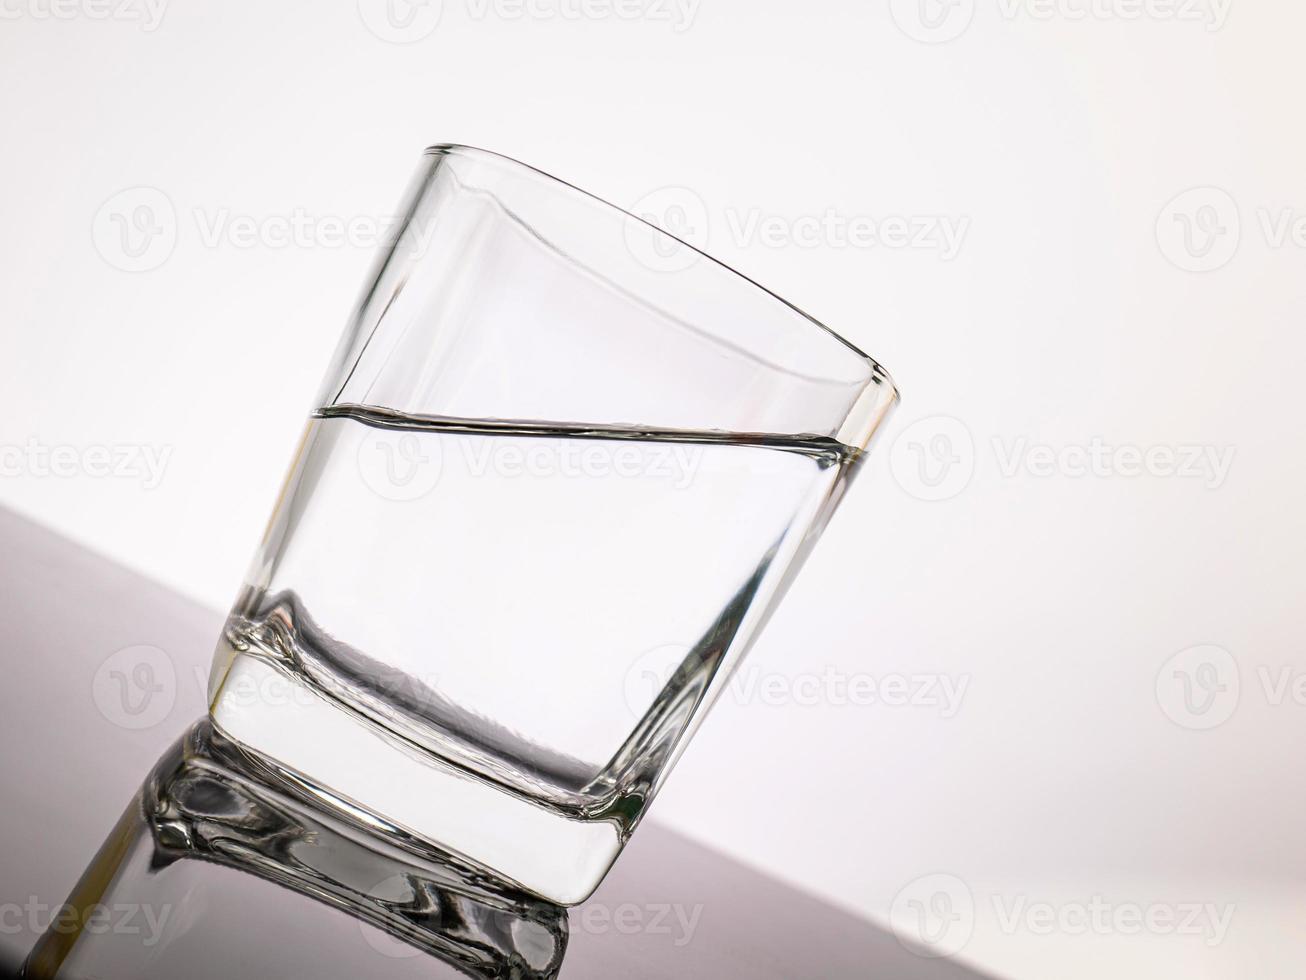 vidro para licor elementos translúcidos feitos de vidro são colocados em uma mesa inclinada. objetos vazios isolados no fundo branco foto